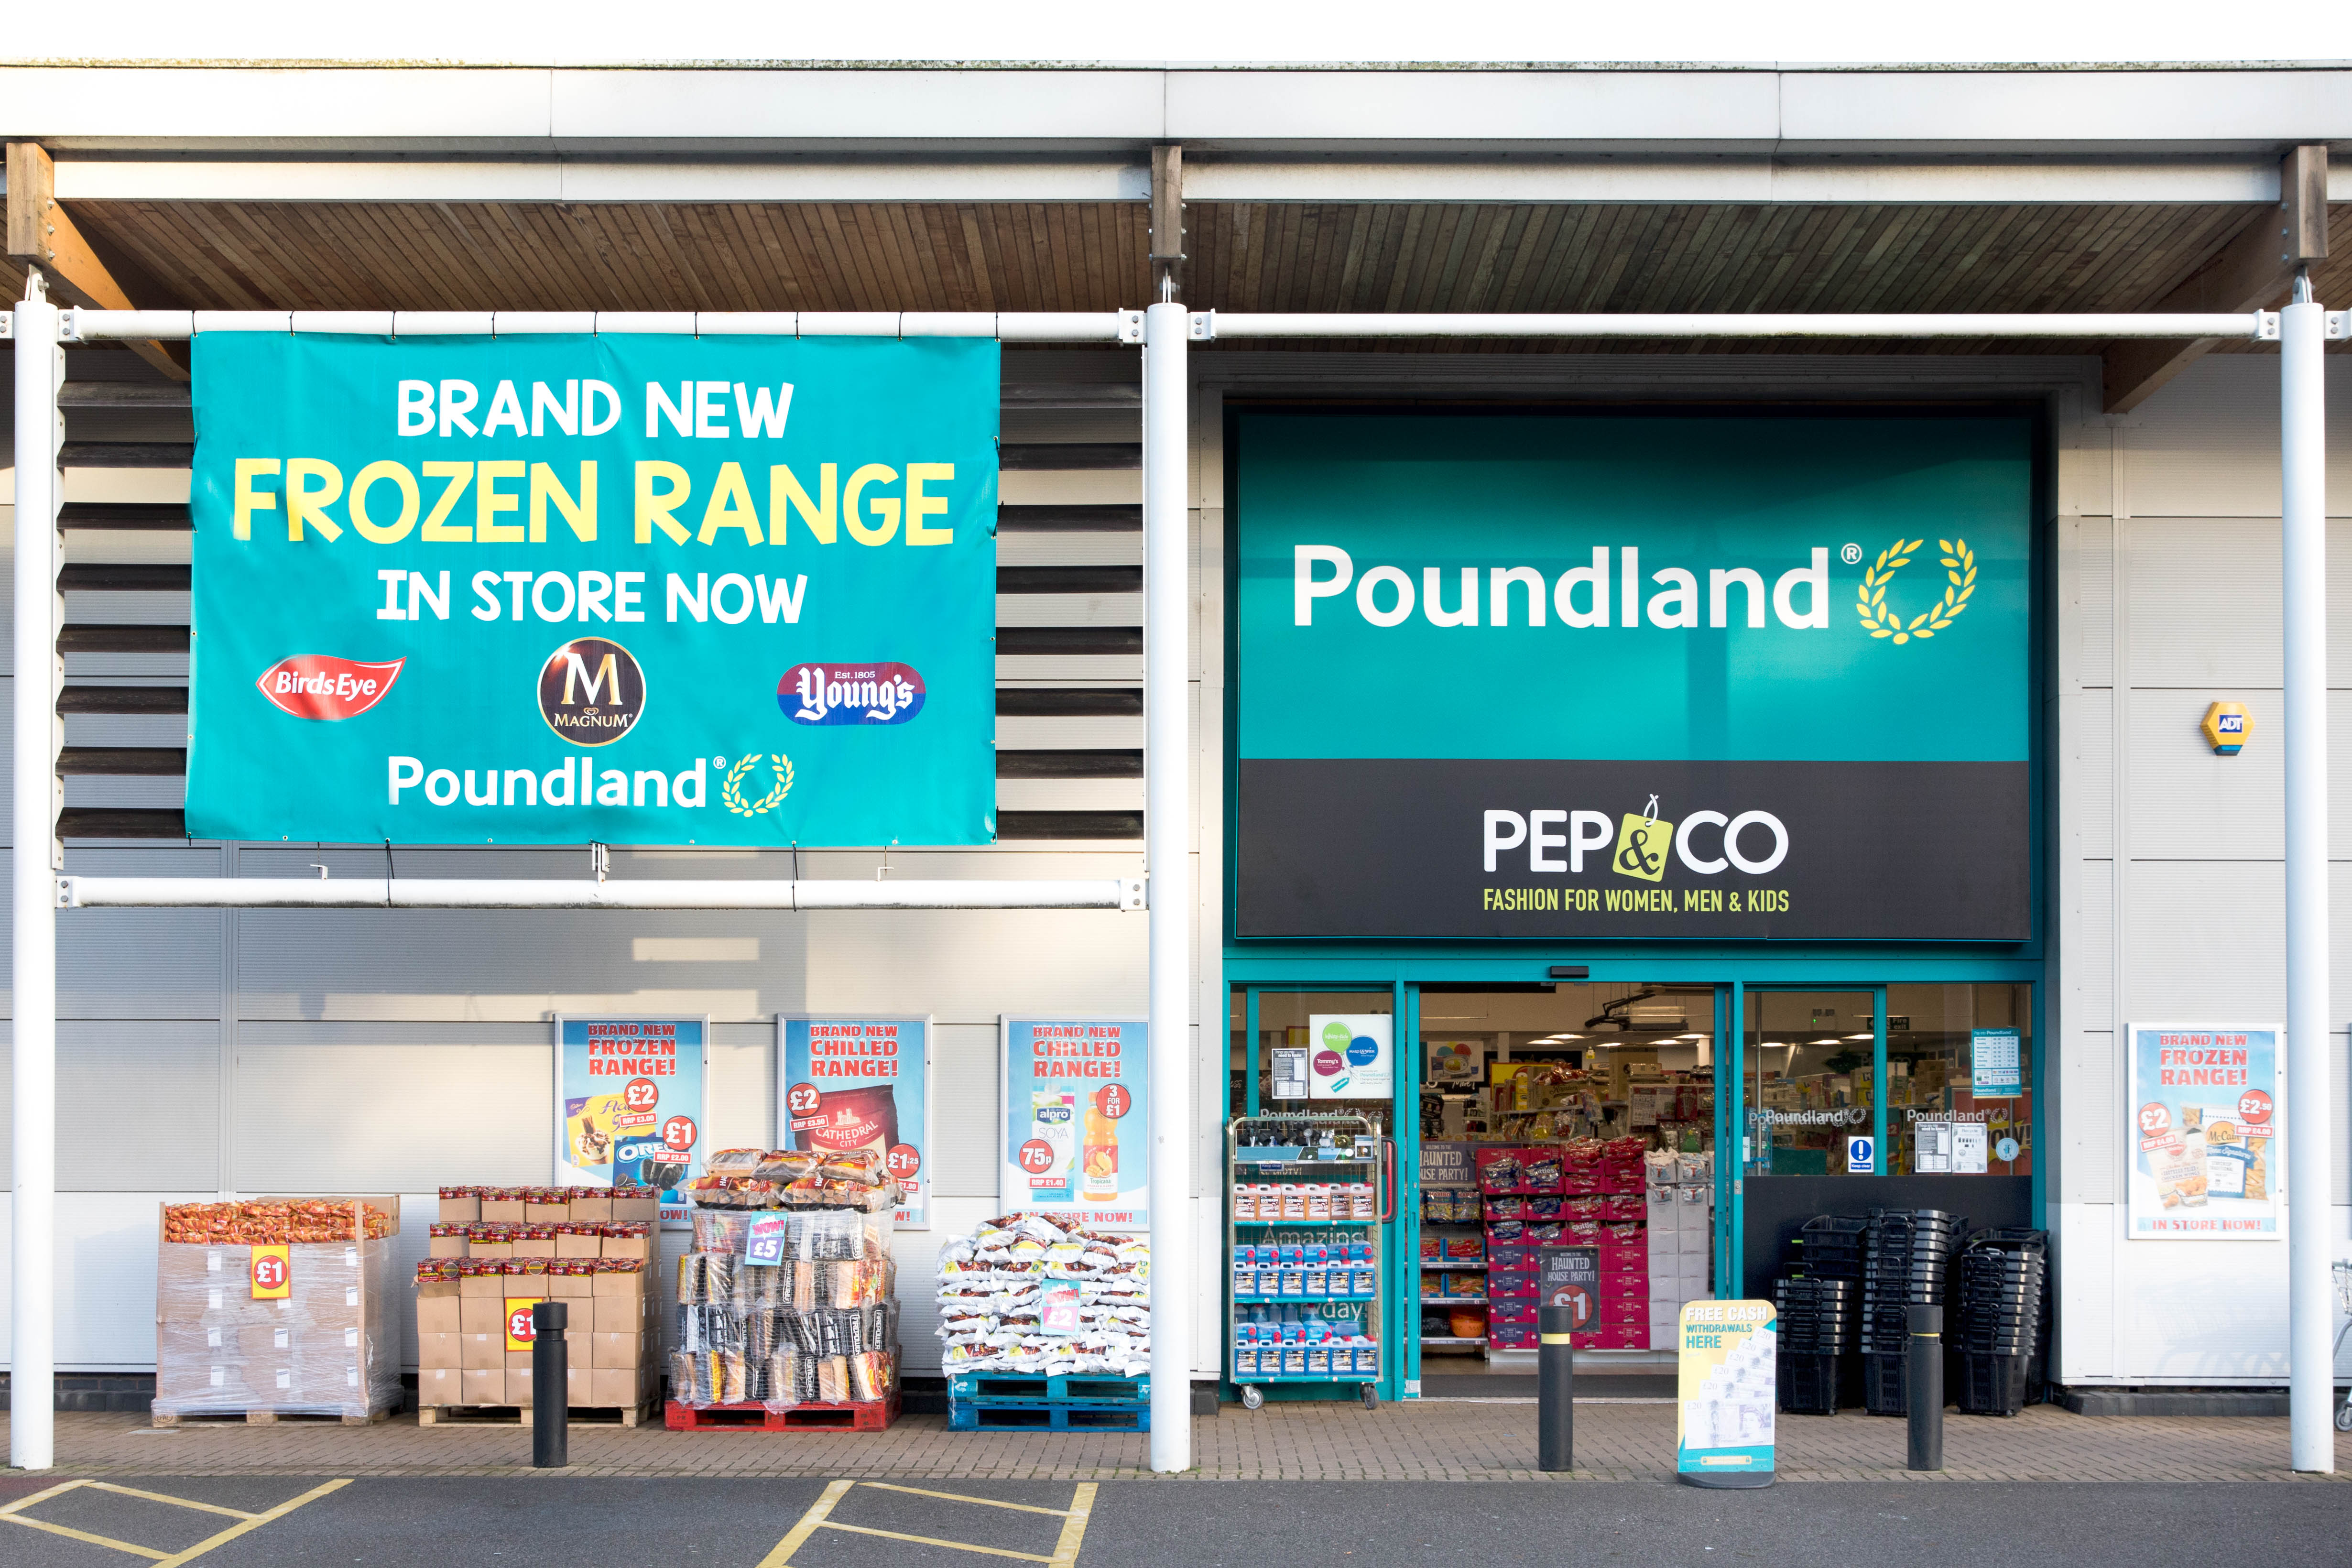 Poundland storefront with new frozen range